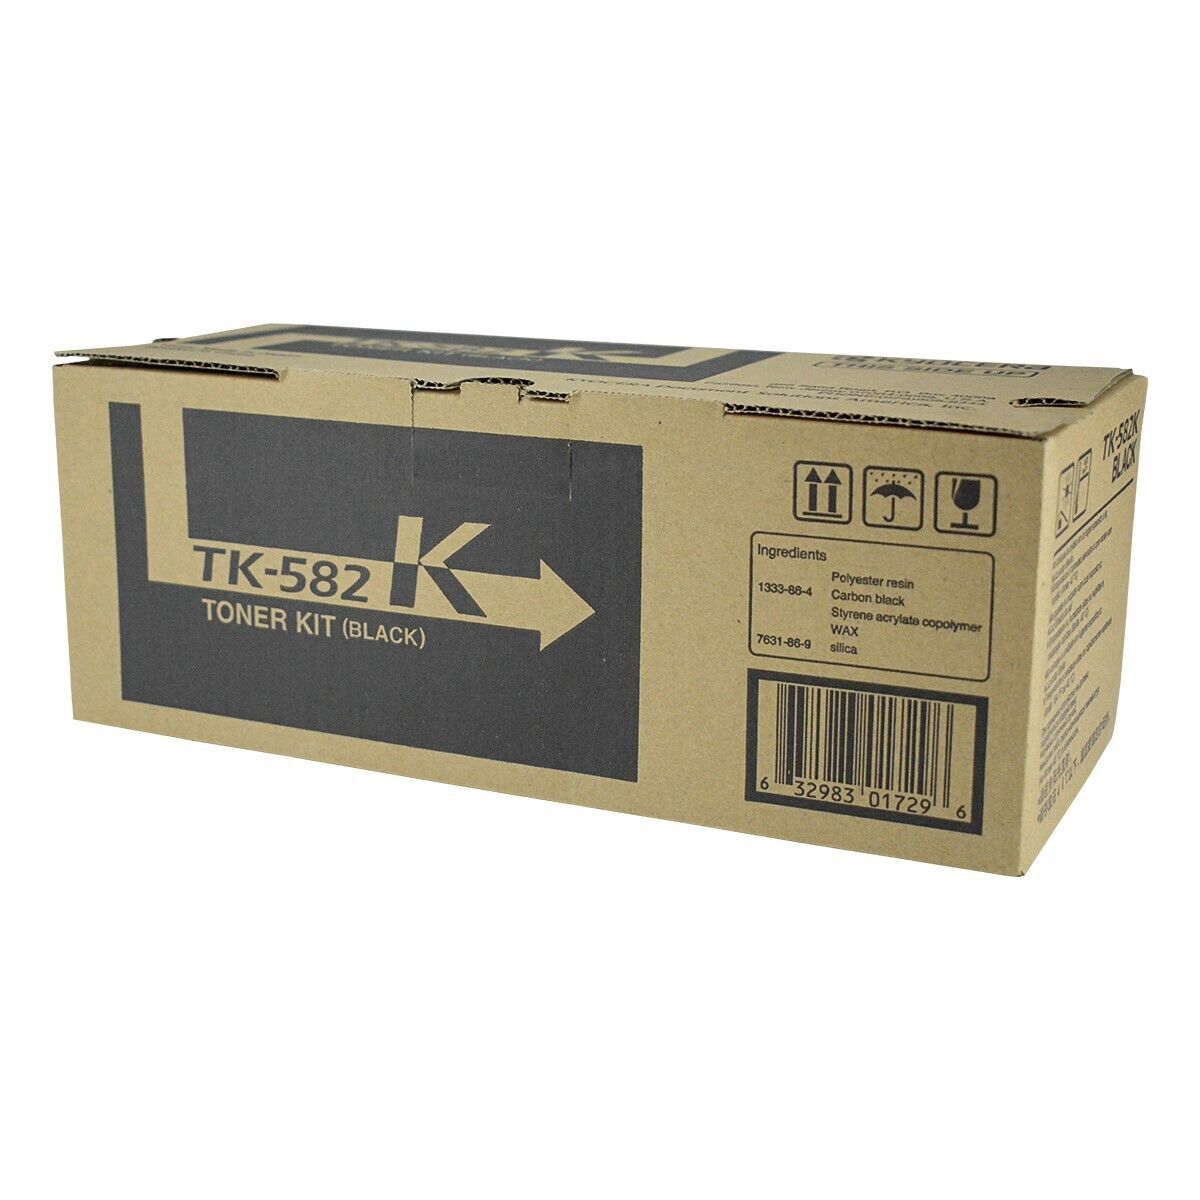 Kyocera Mita 1T02KT0US0, TK582K OEM Toner Black 3.5K Yield for use in